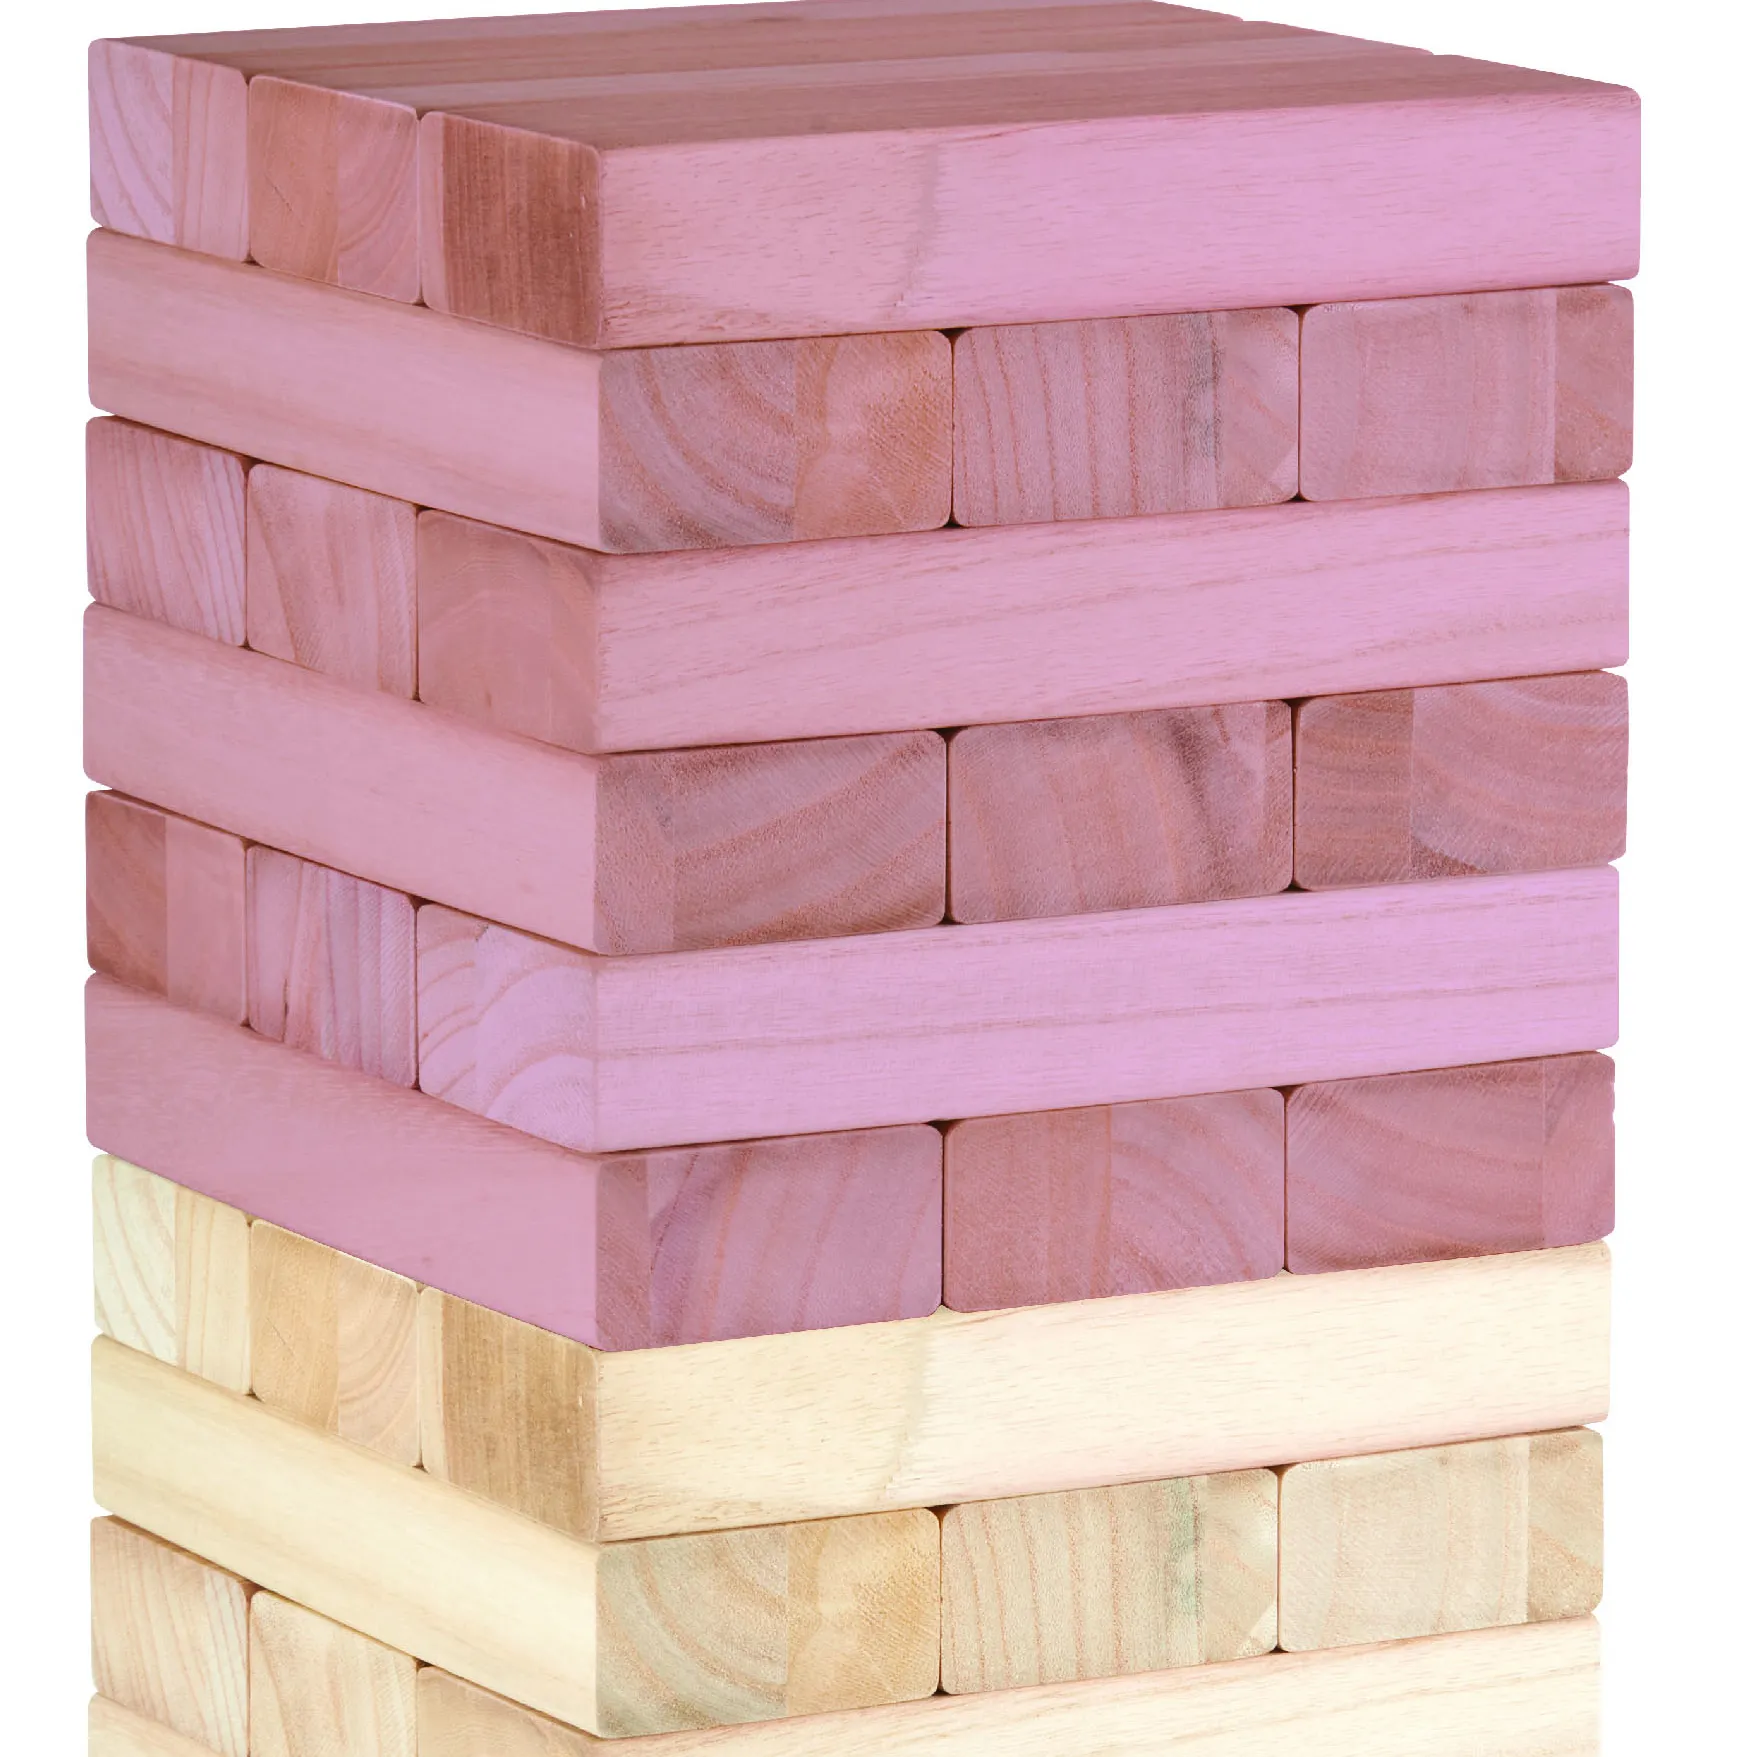 Juego de bloques de construcción de madera para niños, juguete de piezas de madera apilada, torre de caída de madera, juegos de jardín familiar